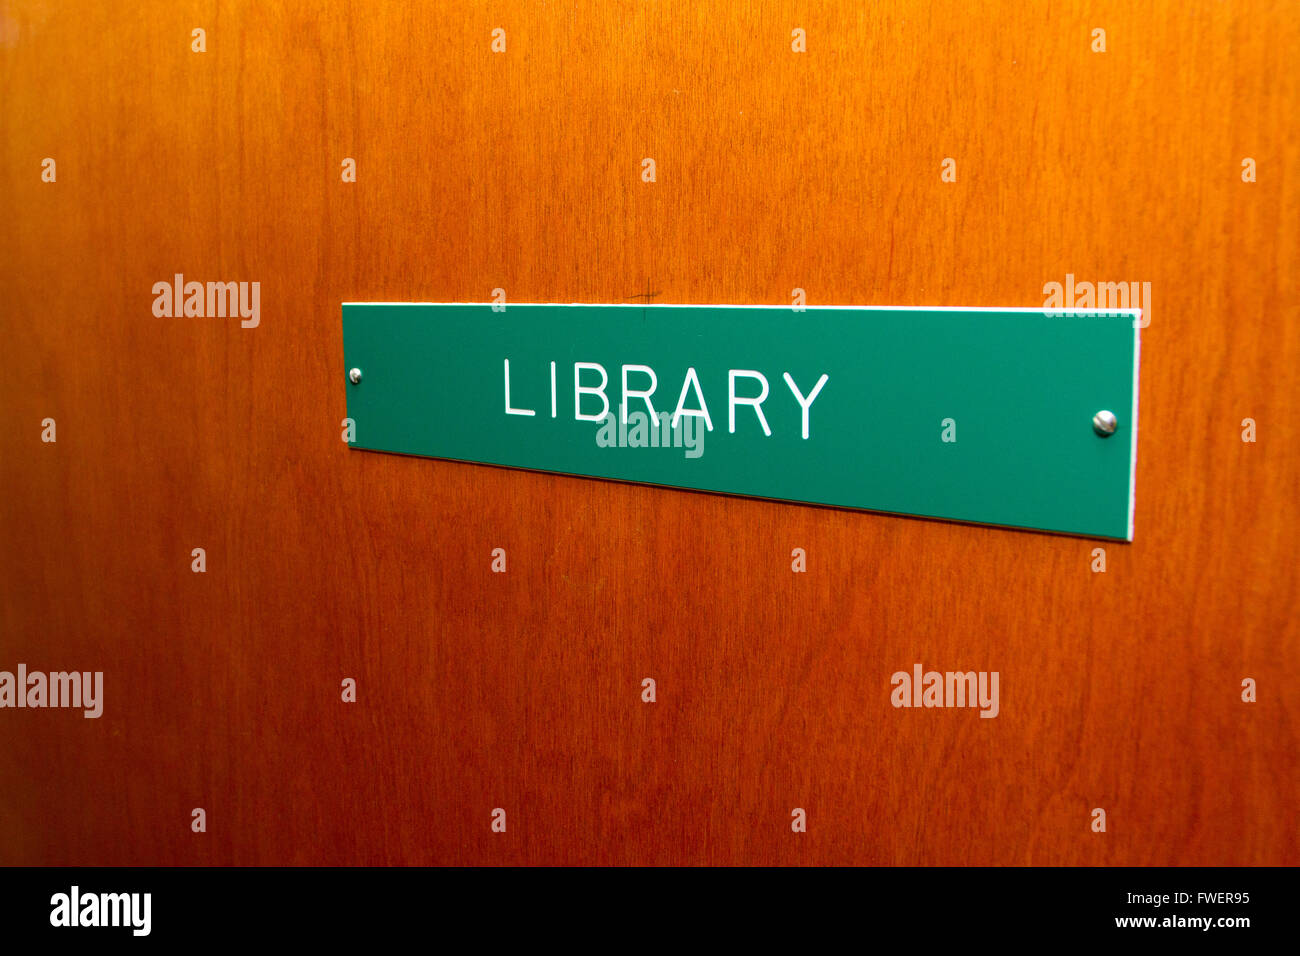 Das äußere dieser Bibliothek Tür hat ein kleines Schild, das sagt der Name des Raumes. Stockfoto